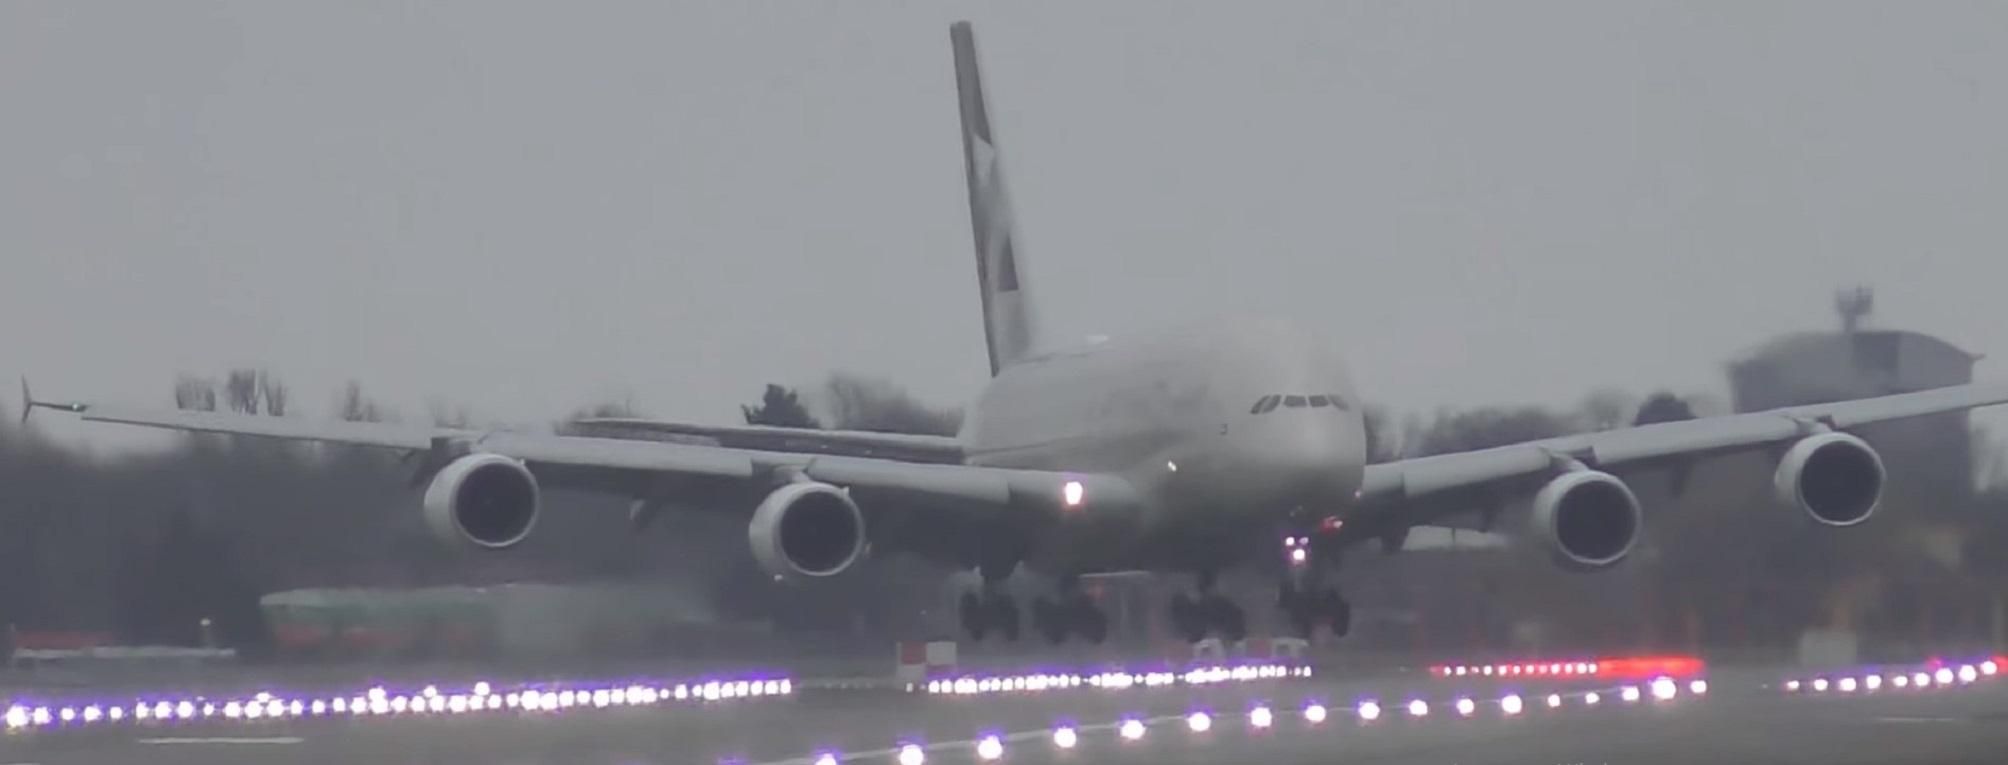 У Лондоні літак з 500 пасажирами ледь не знесло вітром: відео екстремального приземлення